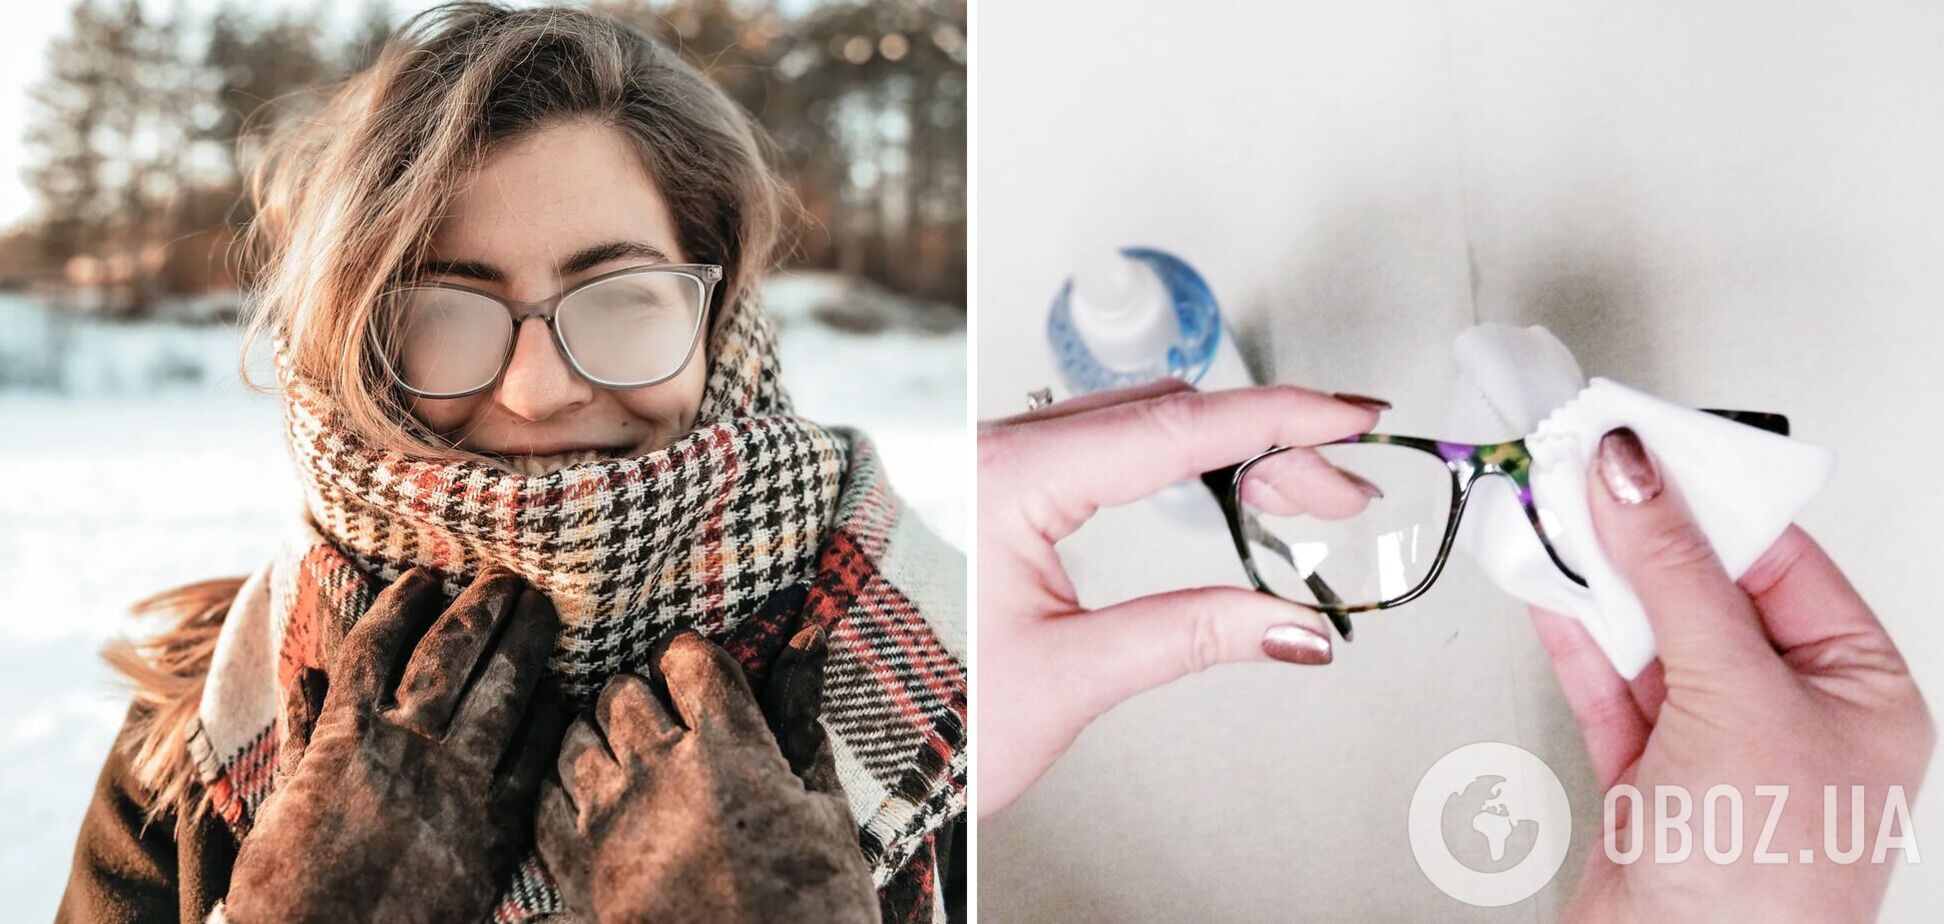 Как сделать, чтобы очки не запотели, когда после мороза заходишь в тепло, и почему это происходит